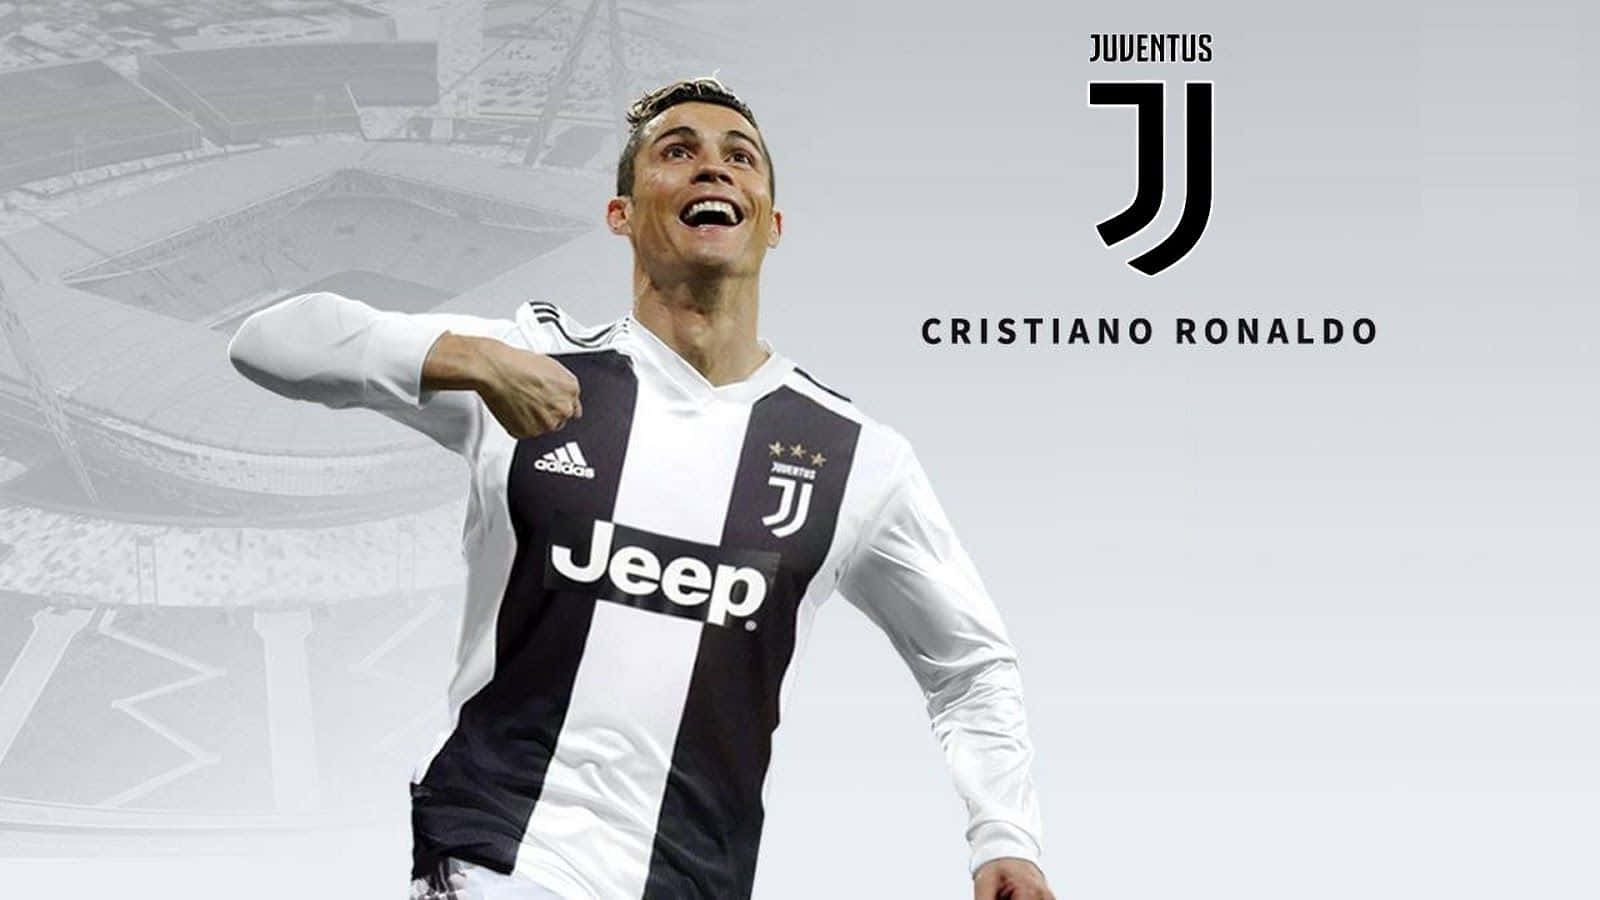 Cristiano Ronaldo | Ronaldo, Cristiano ronaldo, Crstiano ronaldo